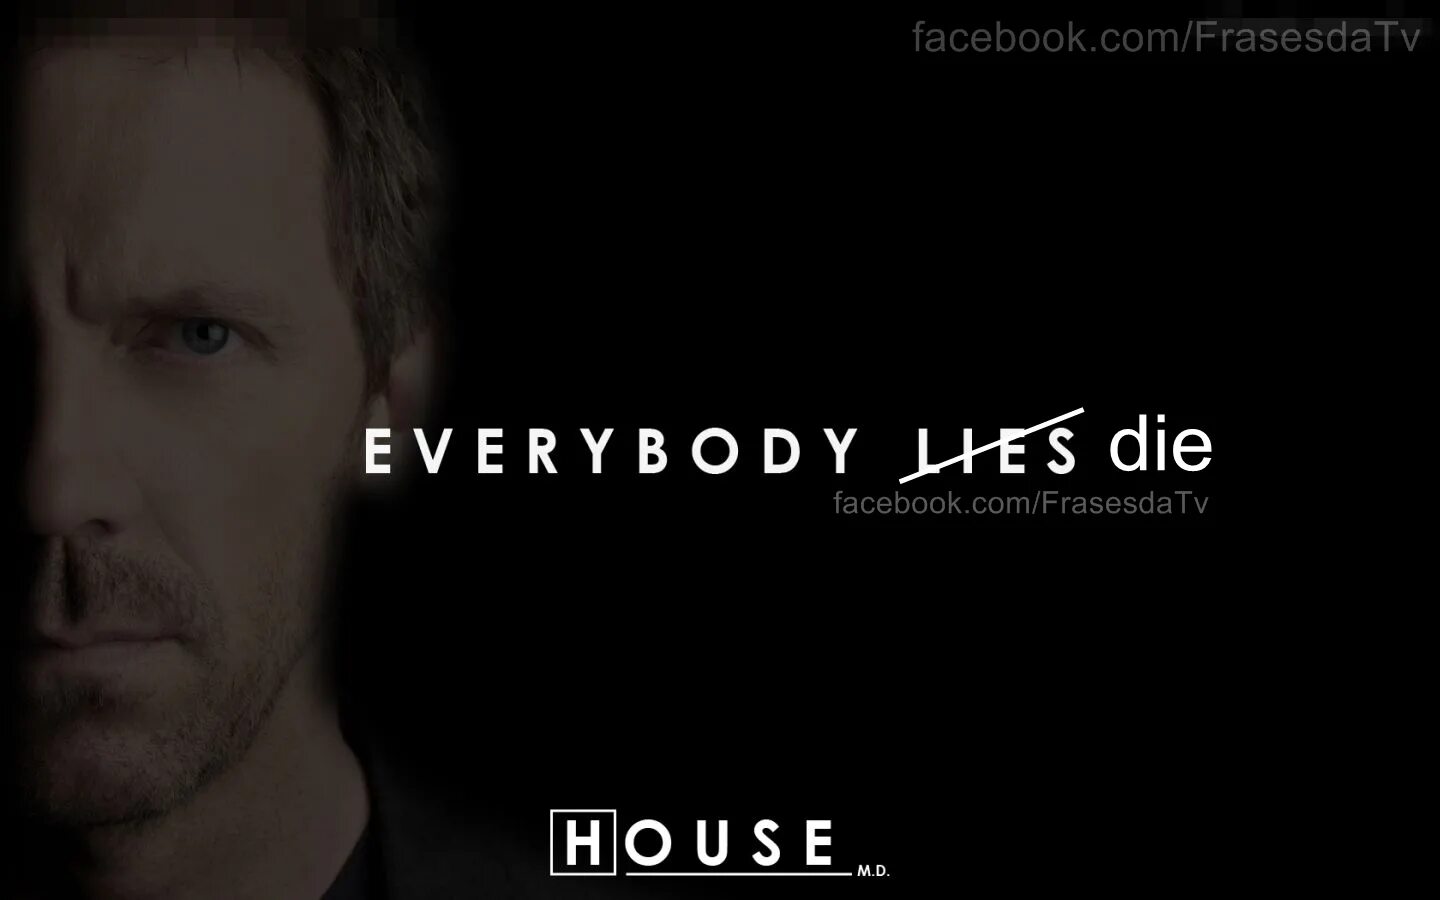 Врать на английском. Доктор Хаус ложь. Доктор Хаус все врут. Доктор Хаус все люди лгут. Все лгут.